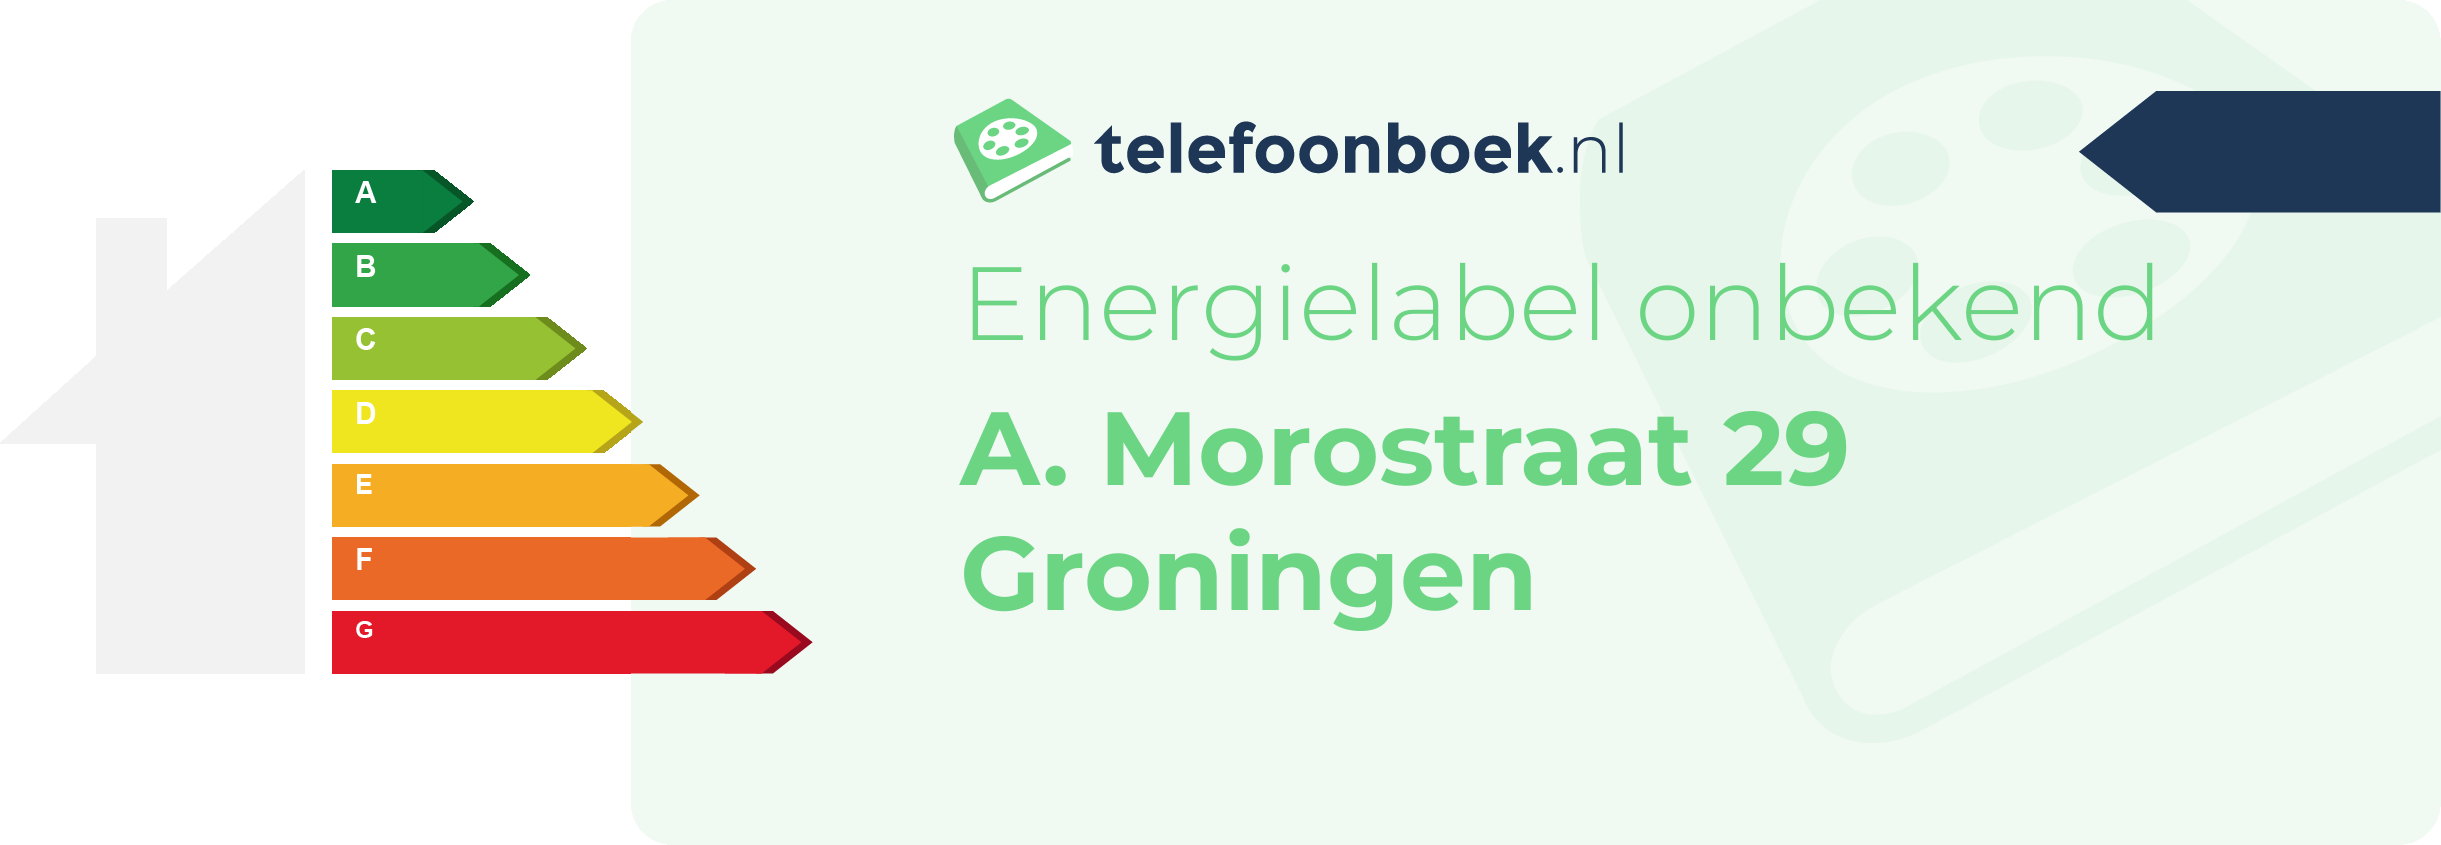 Energielabel A. Morostraat 29 Groningen